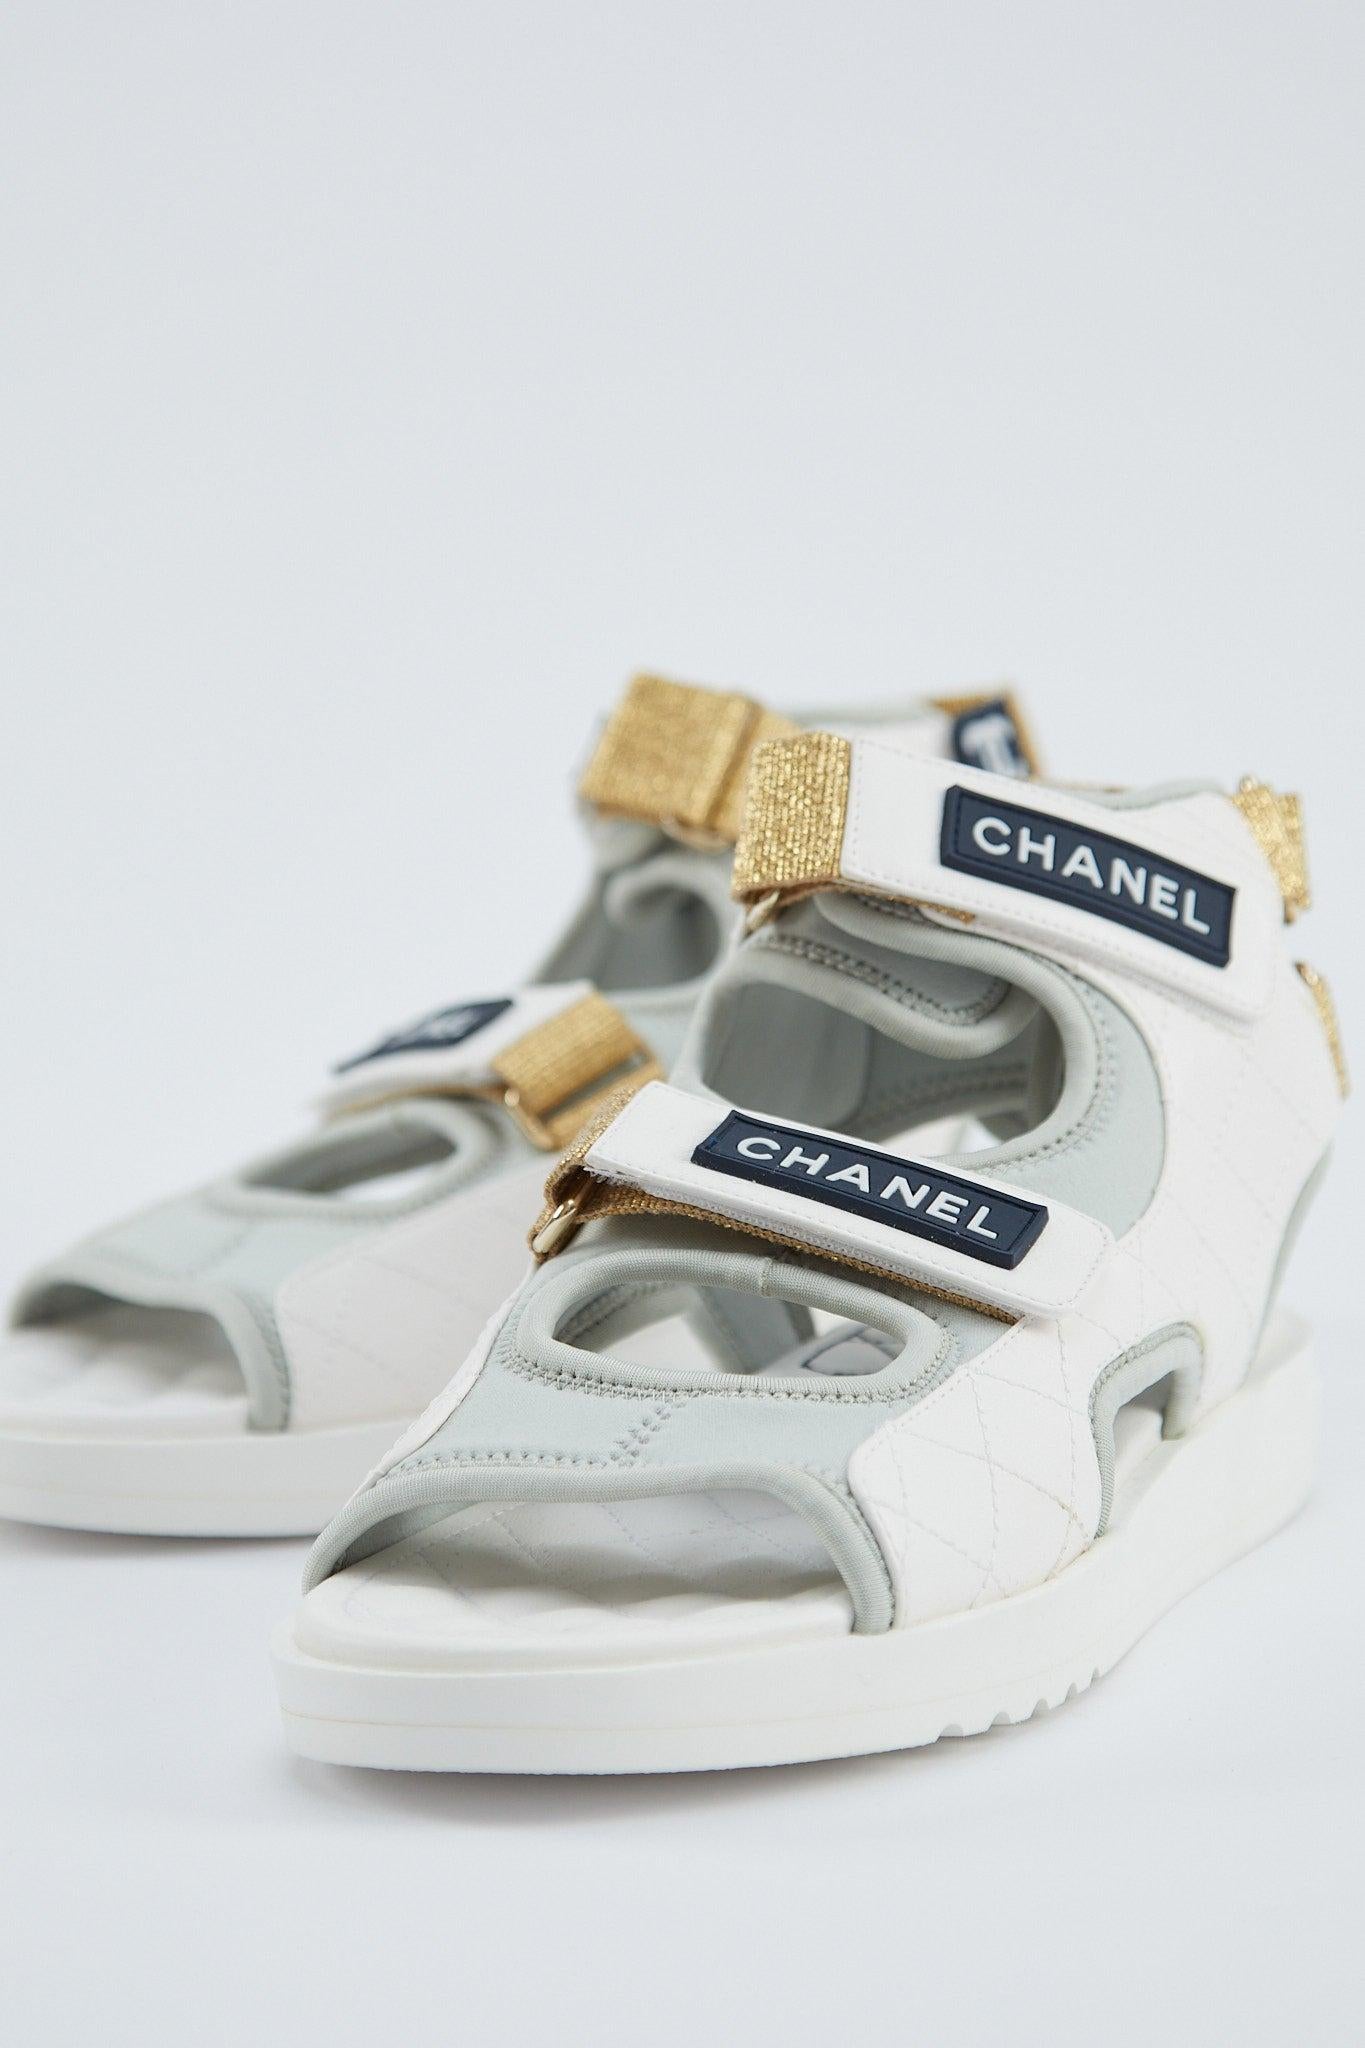 Chanel Gladiator-Sandale 

Grauer Jersey-Stoff mit weißem Lederbesatz

Knöchelriemen, Obermaterial mit Klettverschluss und marineblaues Chanel-Logo

Gesteppte Innensohle und goldener Stretchabsatz

Kommt mit Box, ohne Staubbeutel

Größe 38.5